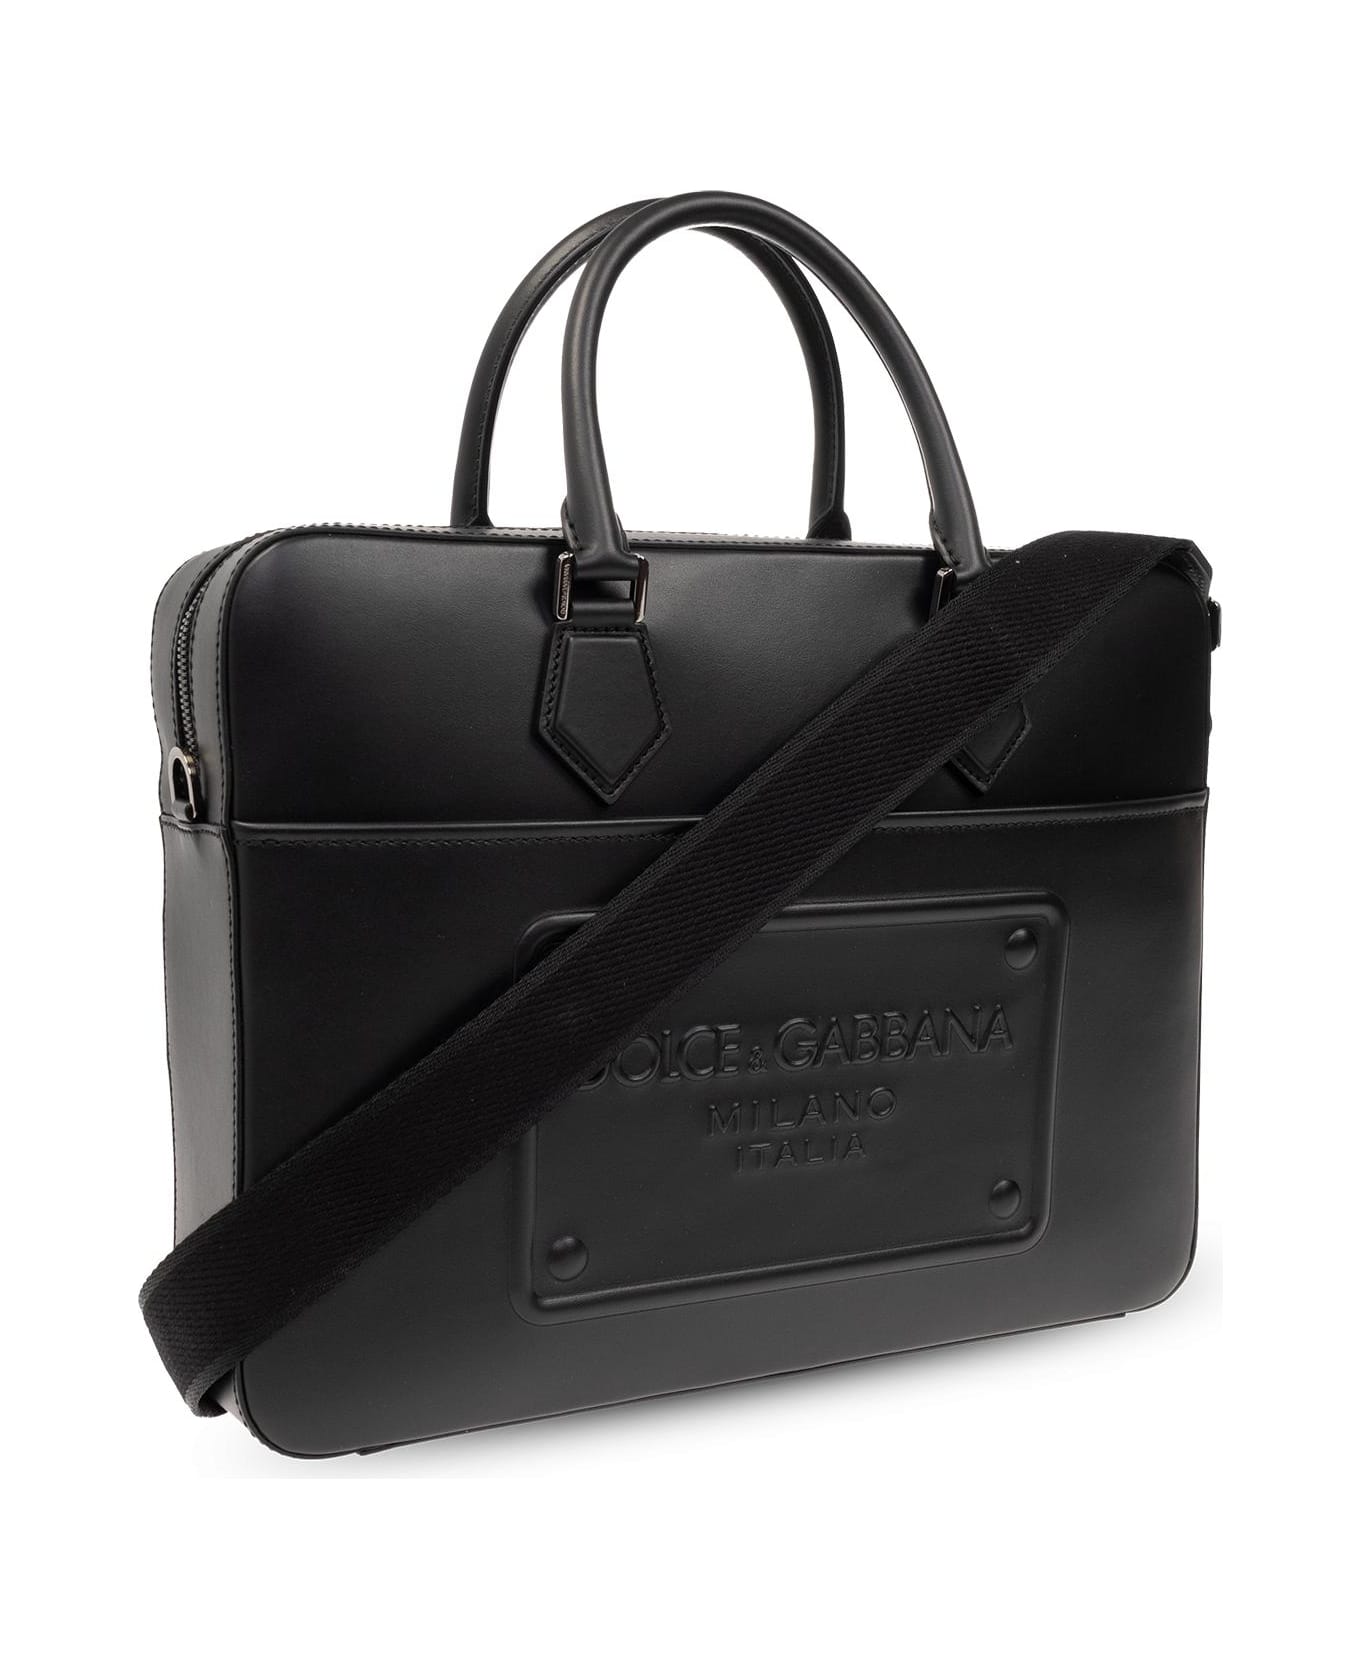 Dolce & Gabbana Briefcase With Logo - Nero